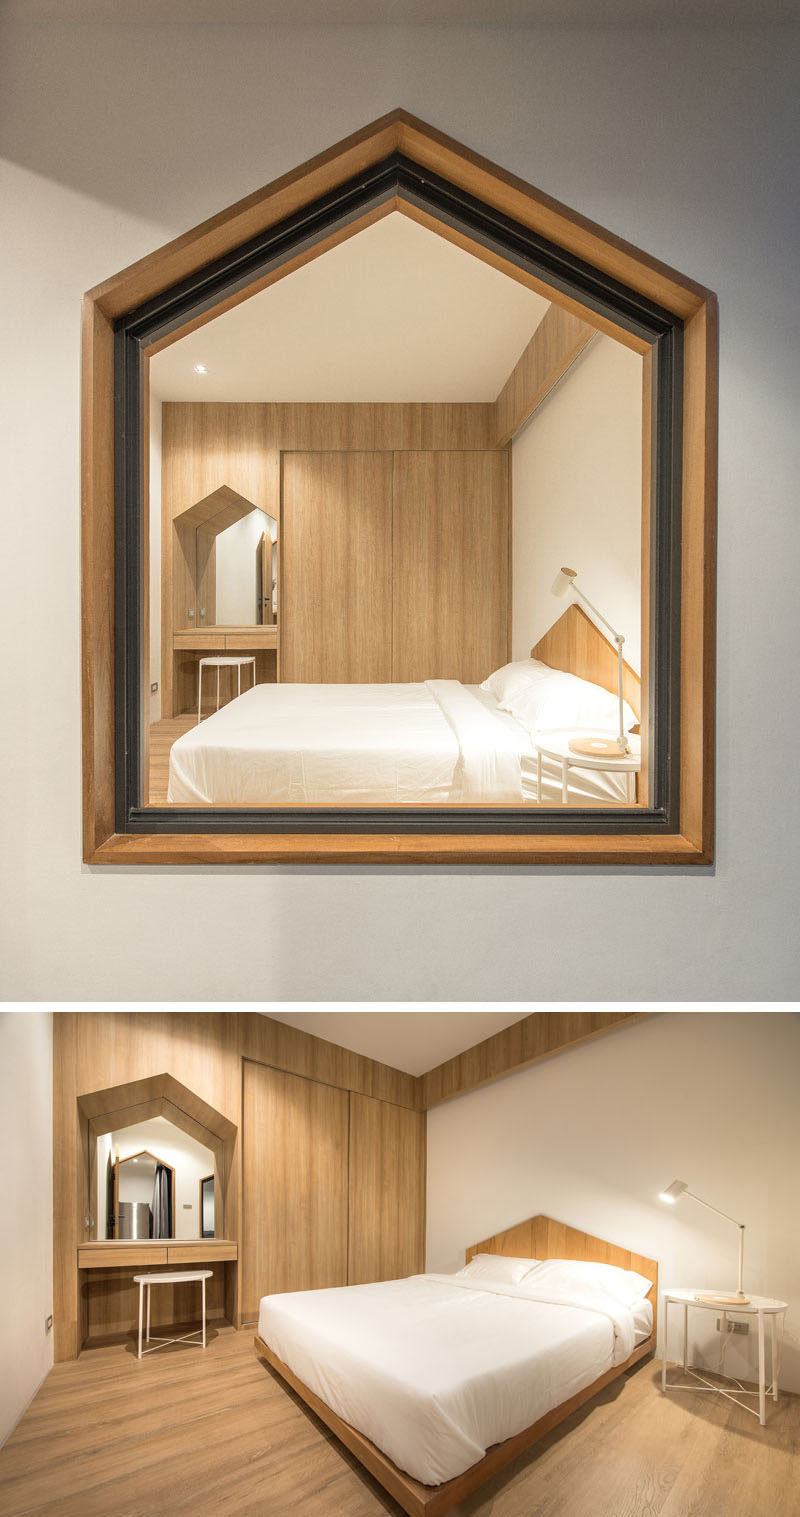 Оконная рама, встроенный стол и изготовленный на заказ каркас кровати в этой современной спальне имеют один и тот же остроконечный элемент дизайна. # Фазон # Спальня # Окно